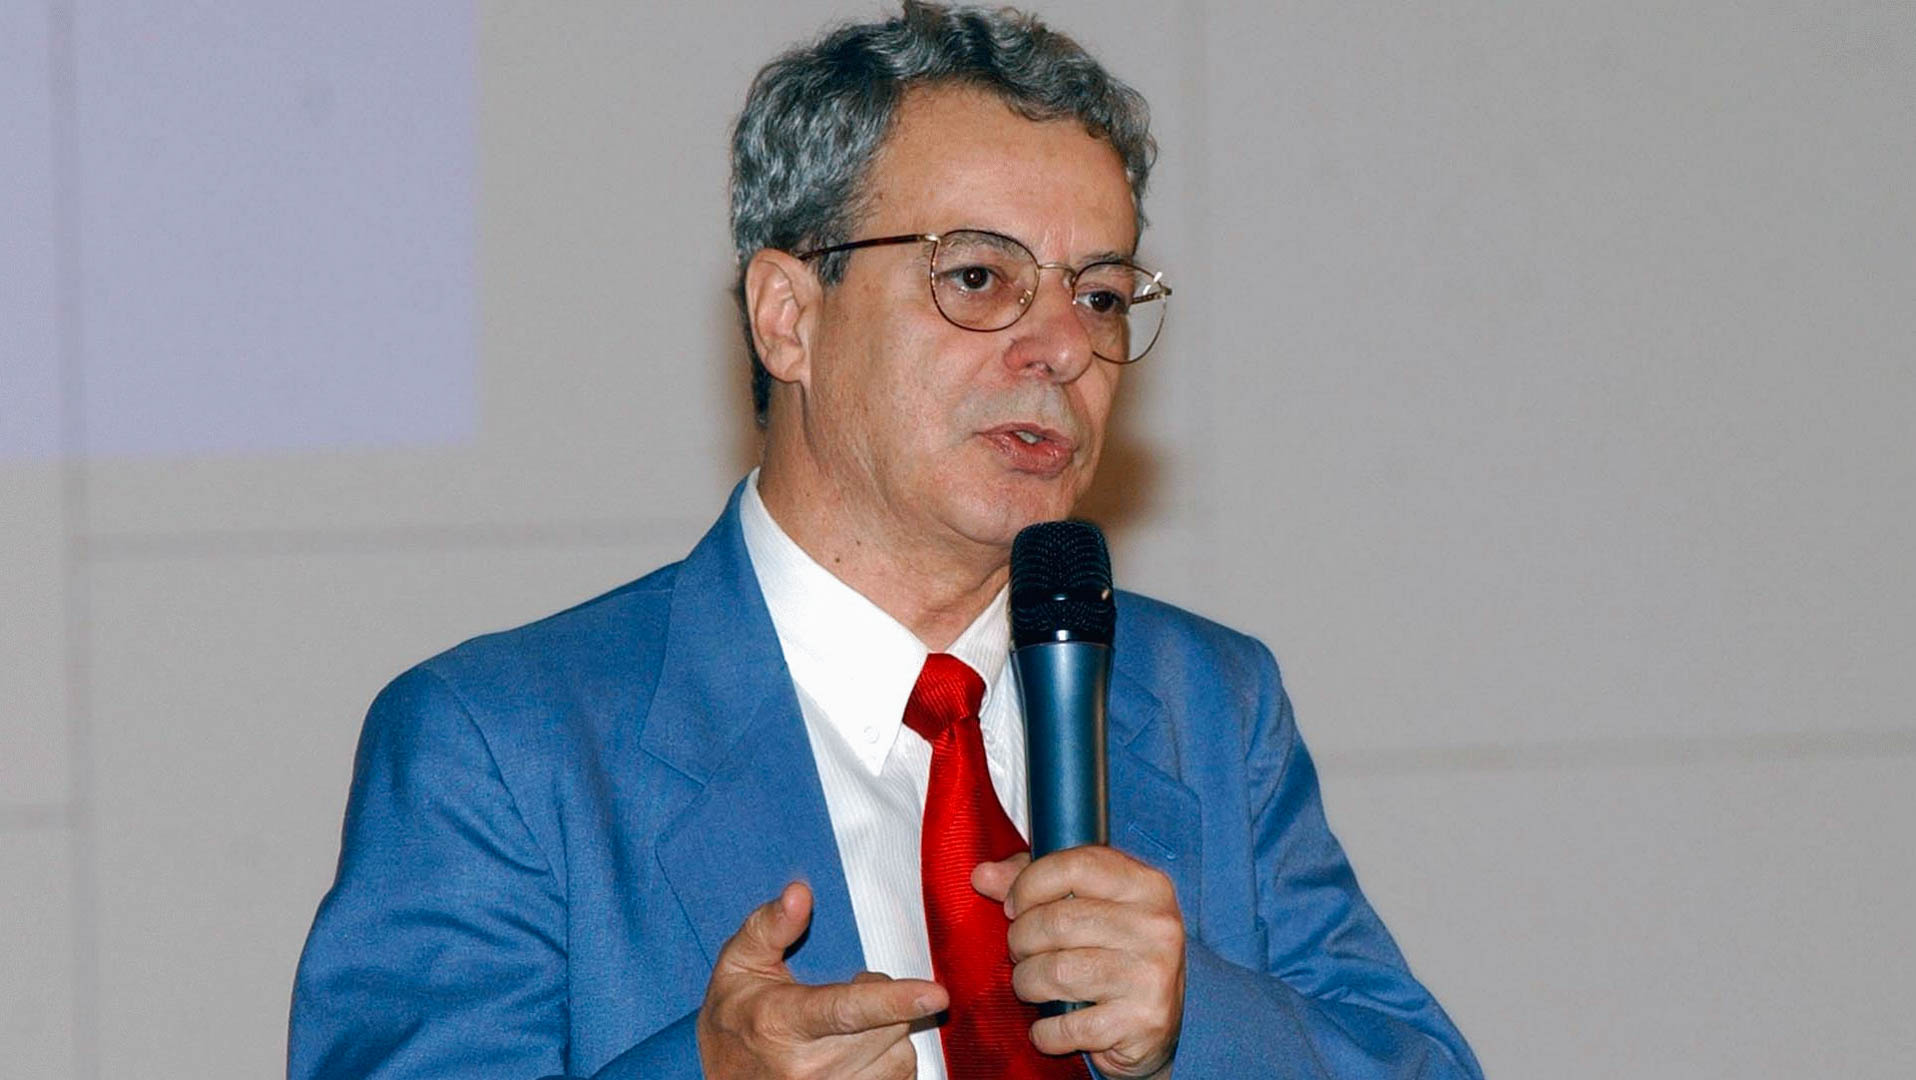 Le théologien Carlos Alberto Libânio Christo, alias Frei Betto, est un dominicain brésilien actif dans les mouvements sociaux (wikimedia commons CC BY 3.0 BR)